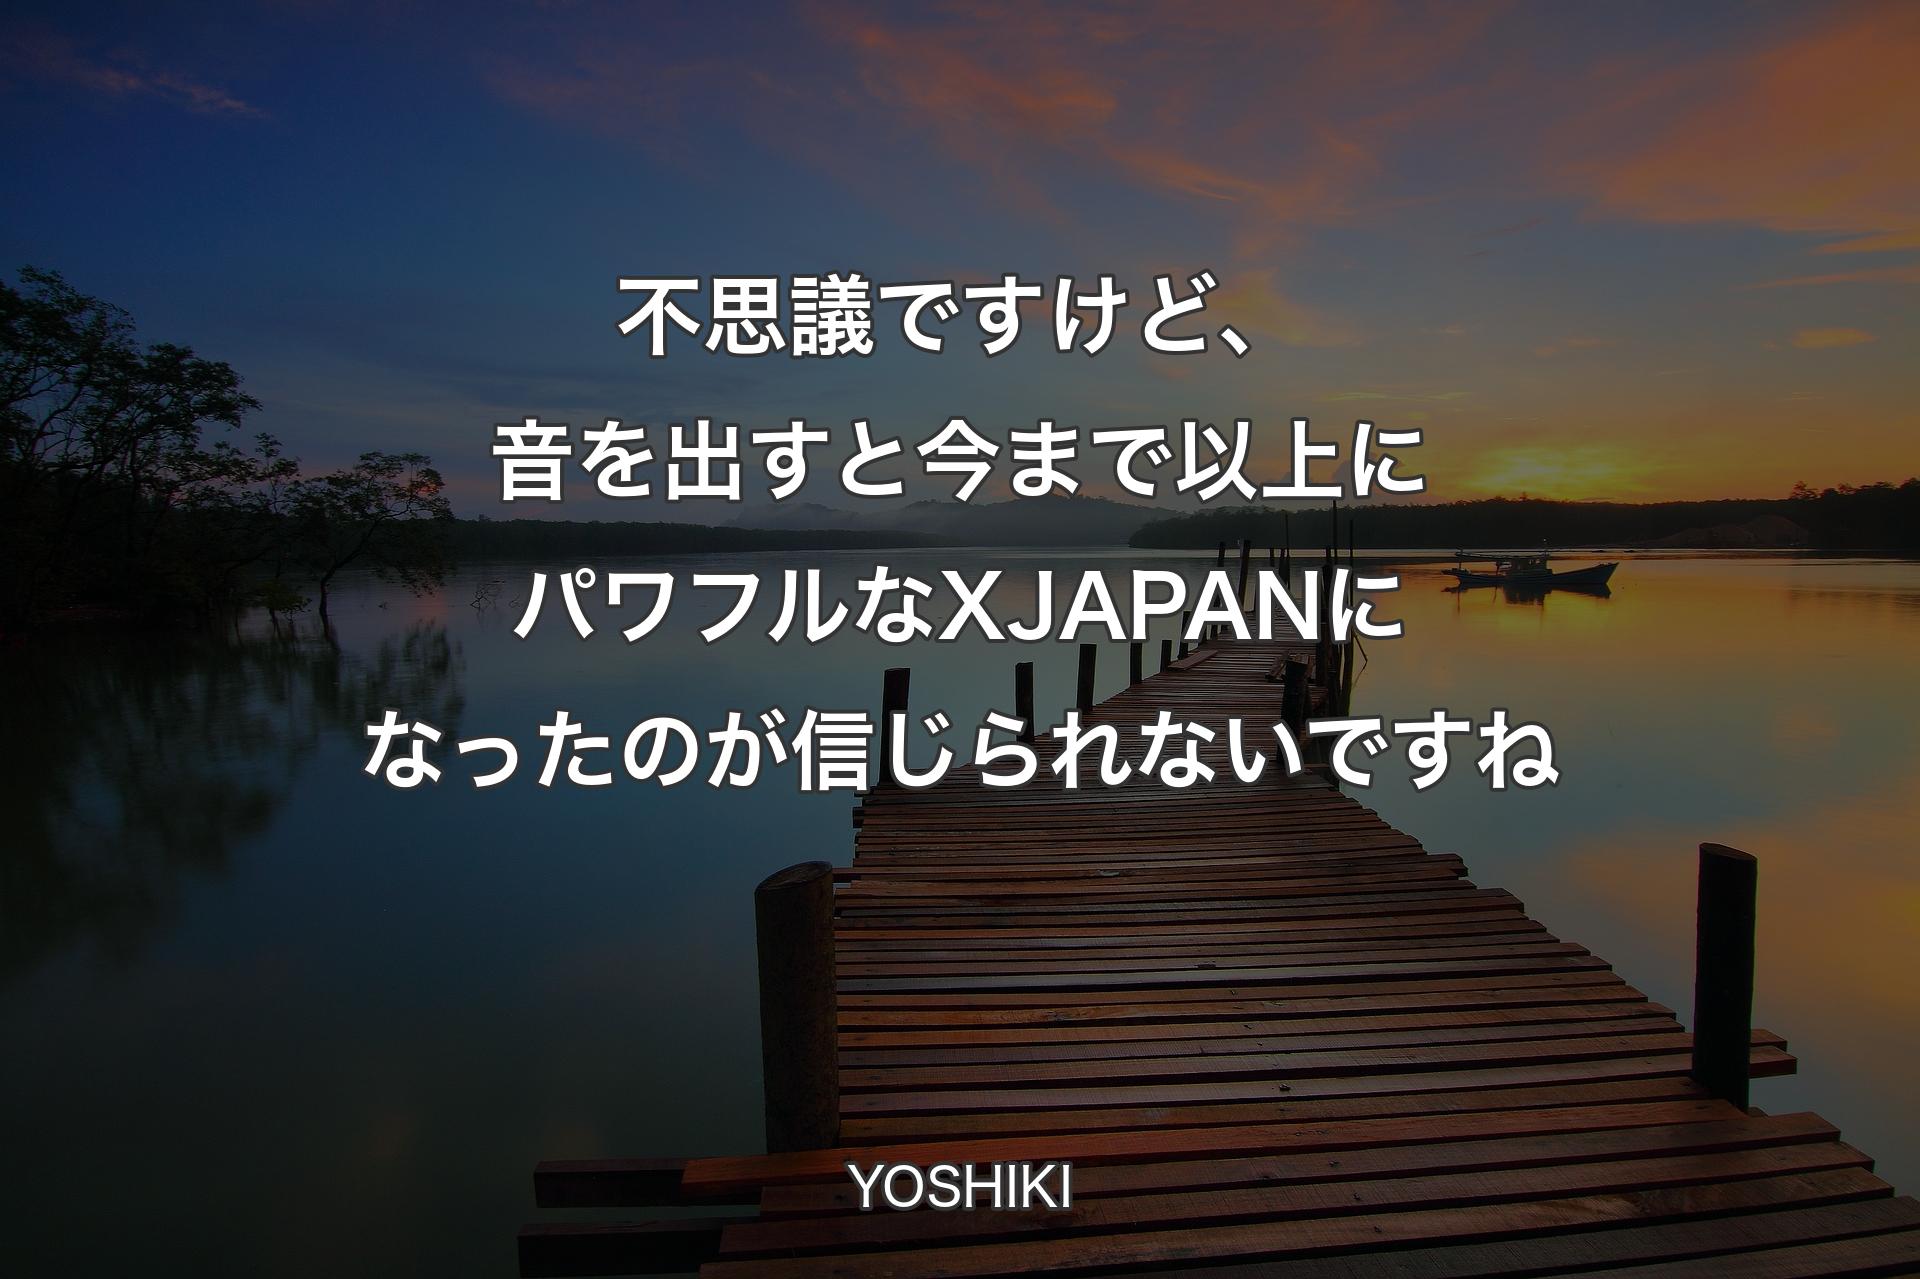 【背景3】不思議ですけど、音を出すと今まで以上にパワフルなX JAPANになったのが信じられな�いですね - YOSHIKI